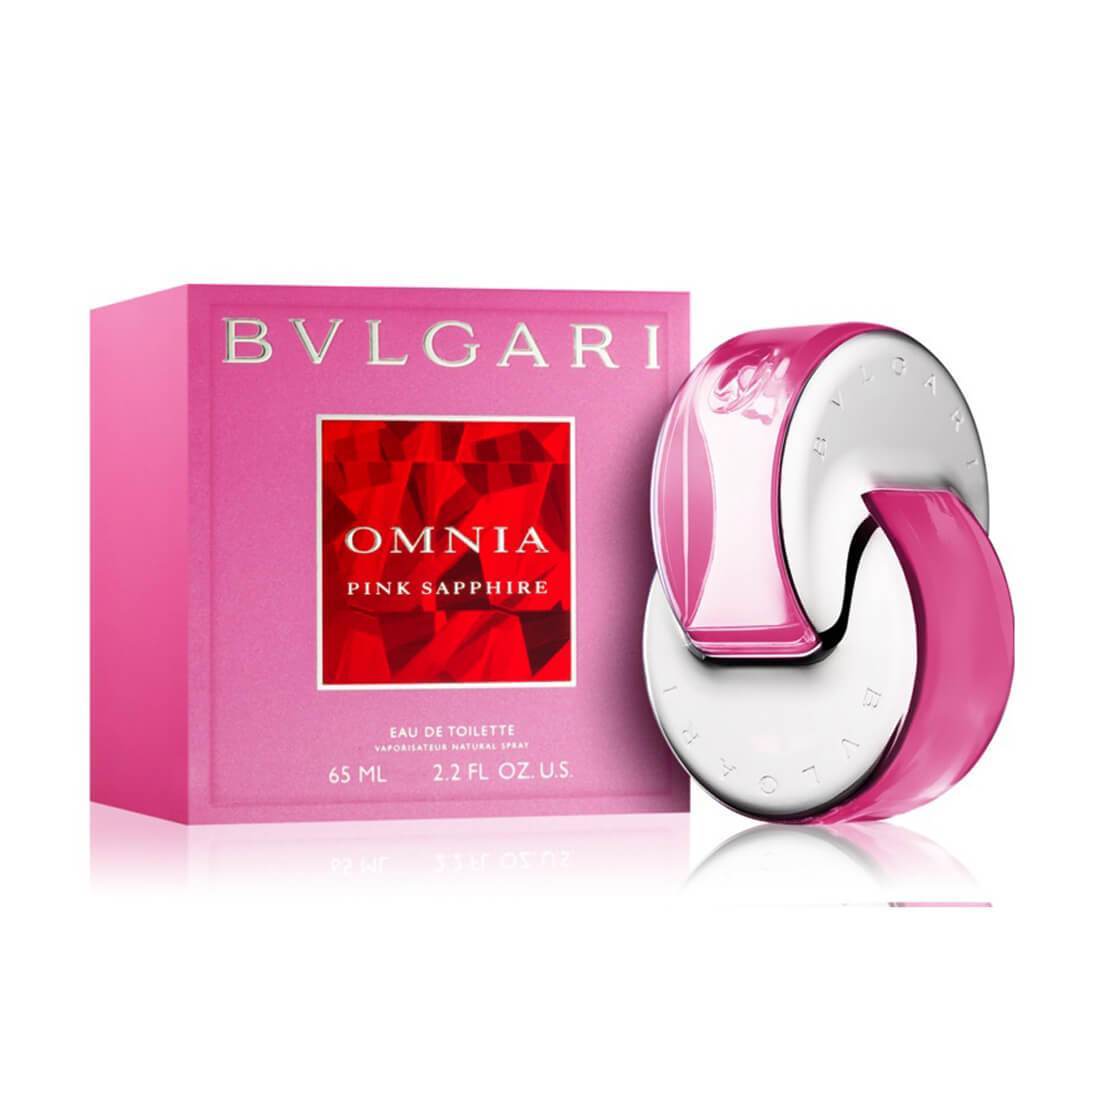 bvlgari pink perfume review